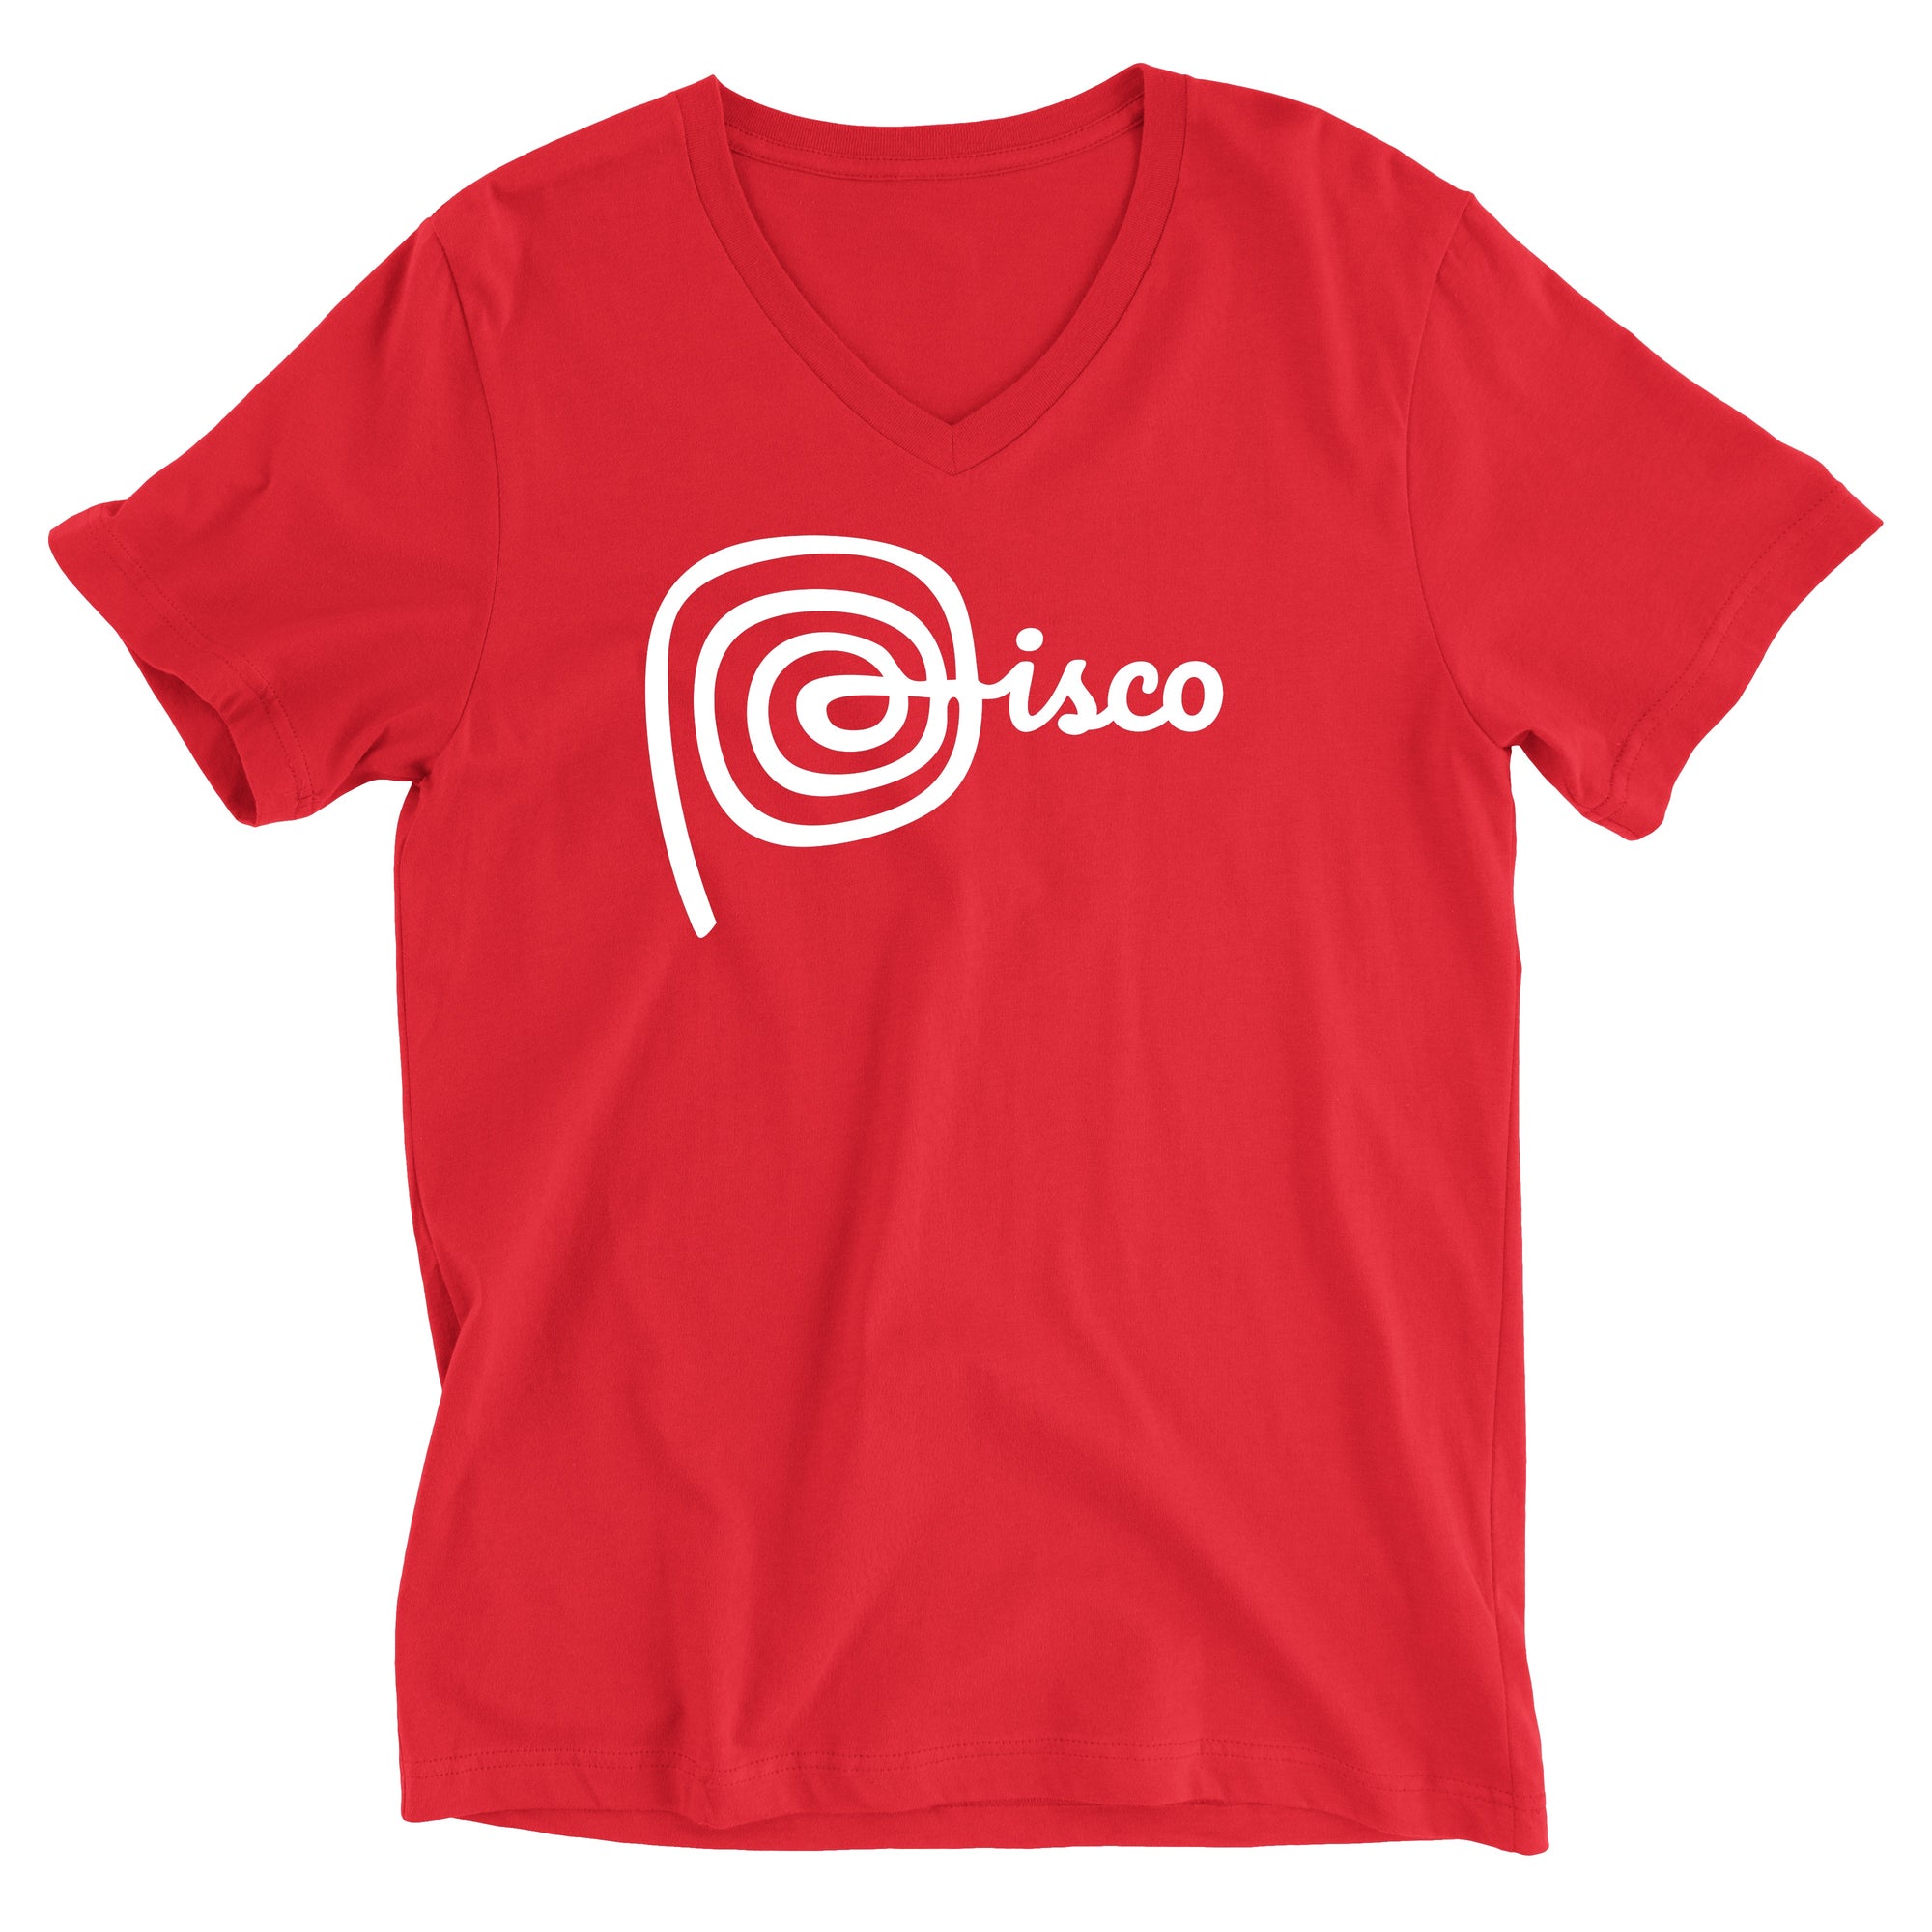 Marca Peru Pisco Sour Red V-Neck T-Shirt for Men